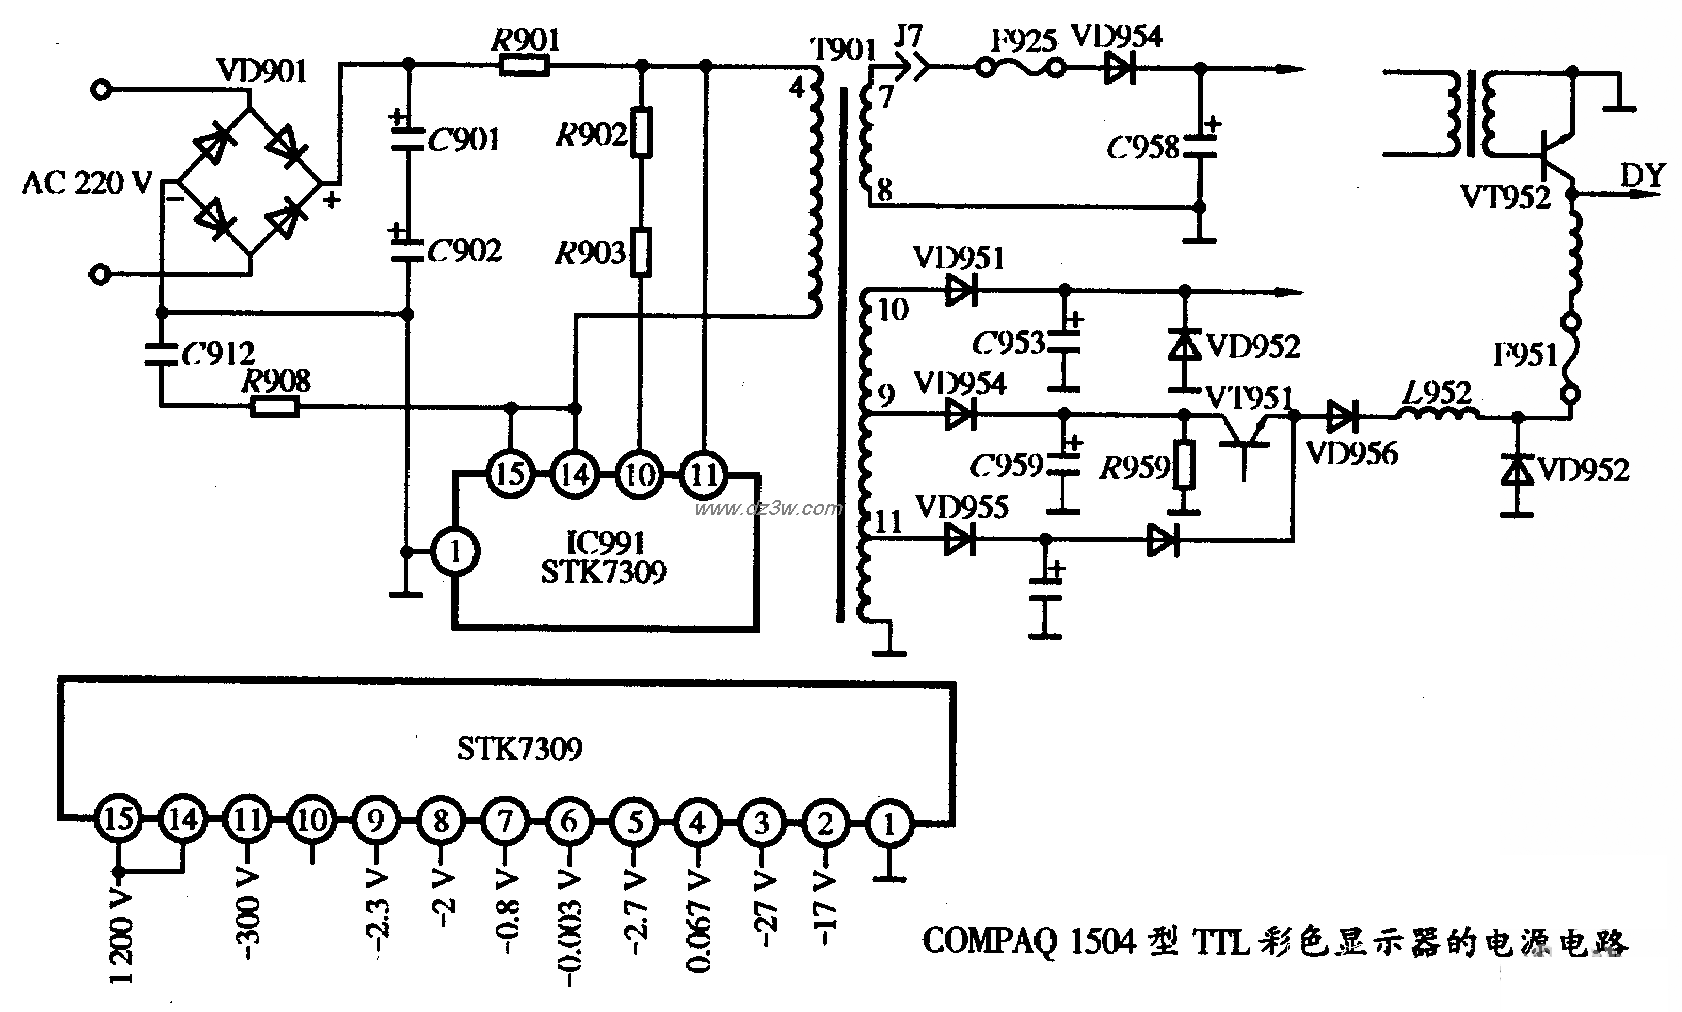 COMPAQ 1504型TTL彩色顯示器的電源電路圖